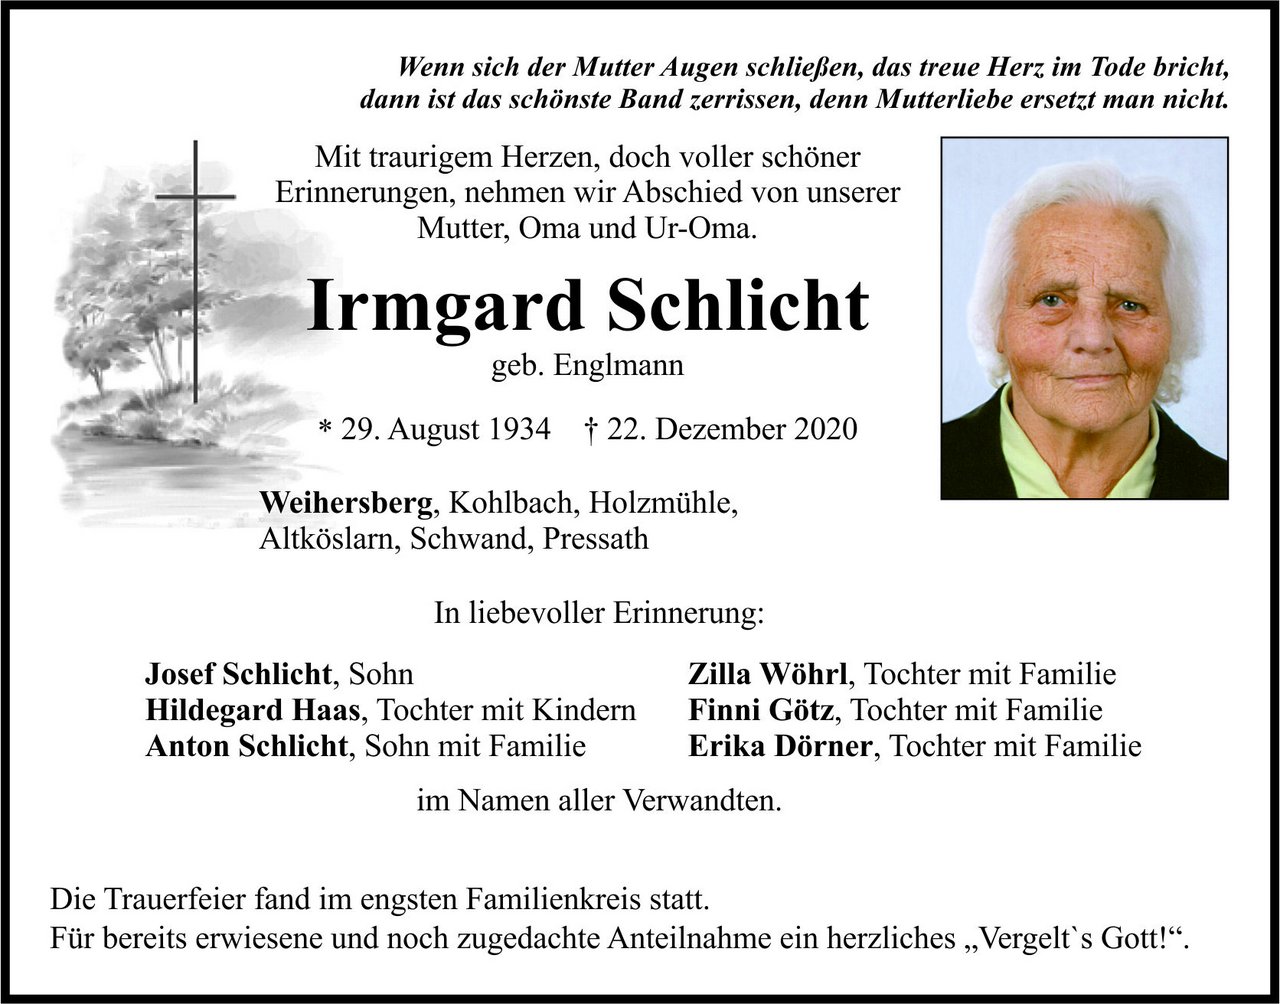 Traueranzeige Irmgard Schlicht, Weihersberg